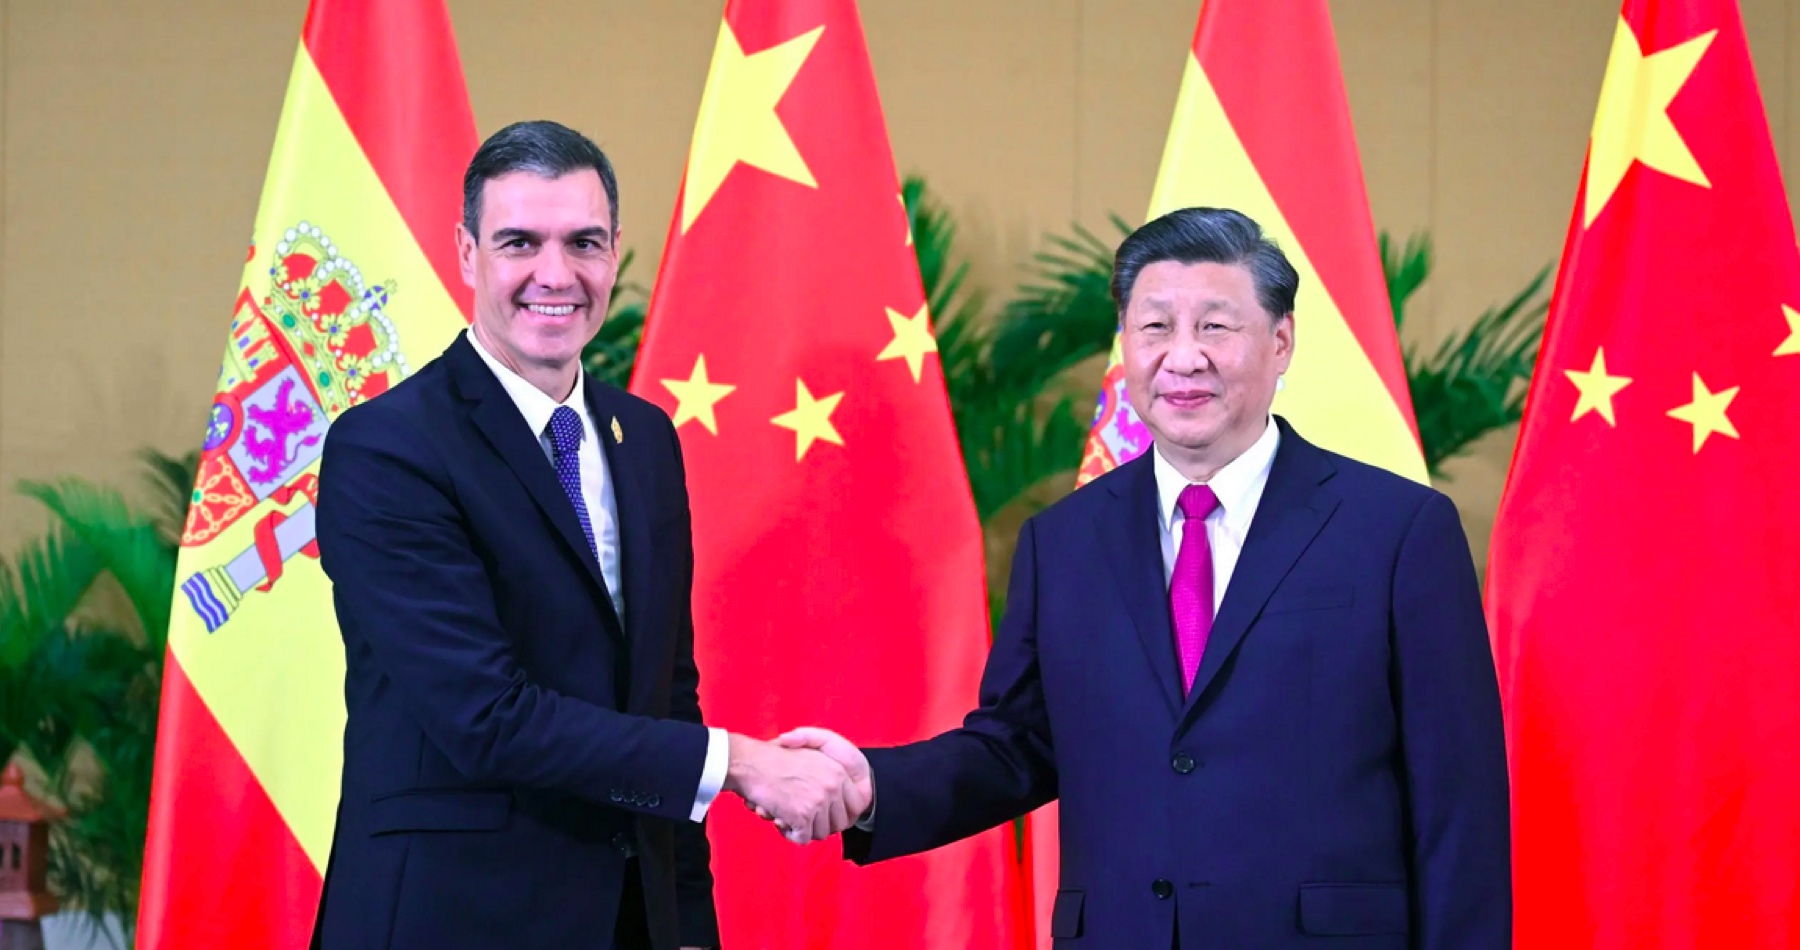 Pokračujúca transformácia geopolitickej reality na planéte bude pokračovať návštevou španielskeho premiéra v Číne. Si Ťin-pching pozval Sáncheza, aby mu na konci marca v Pekingu vysvetlil, ako sa veci majú